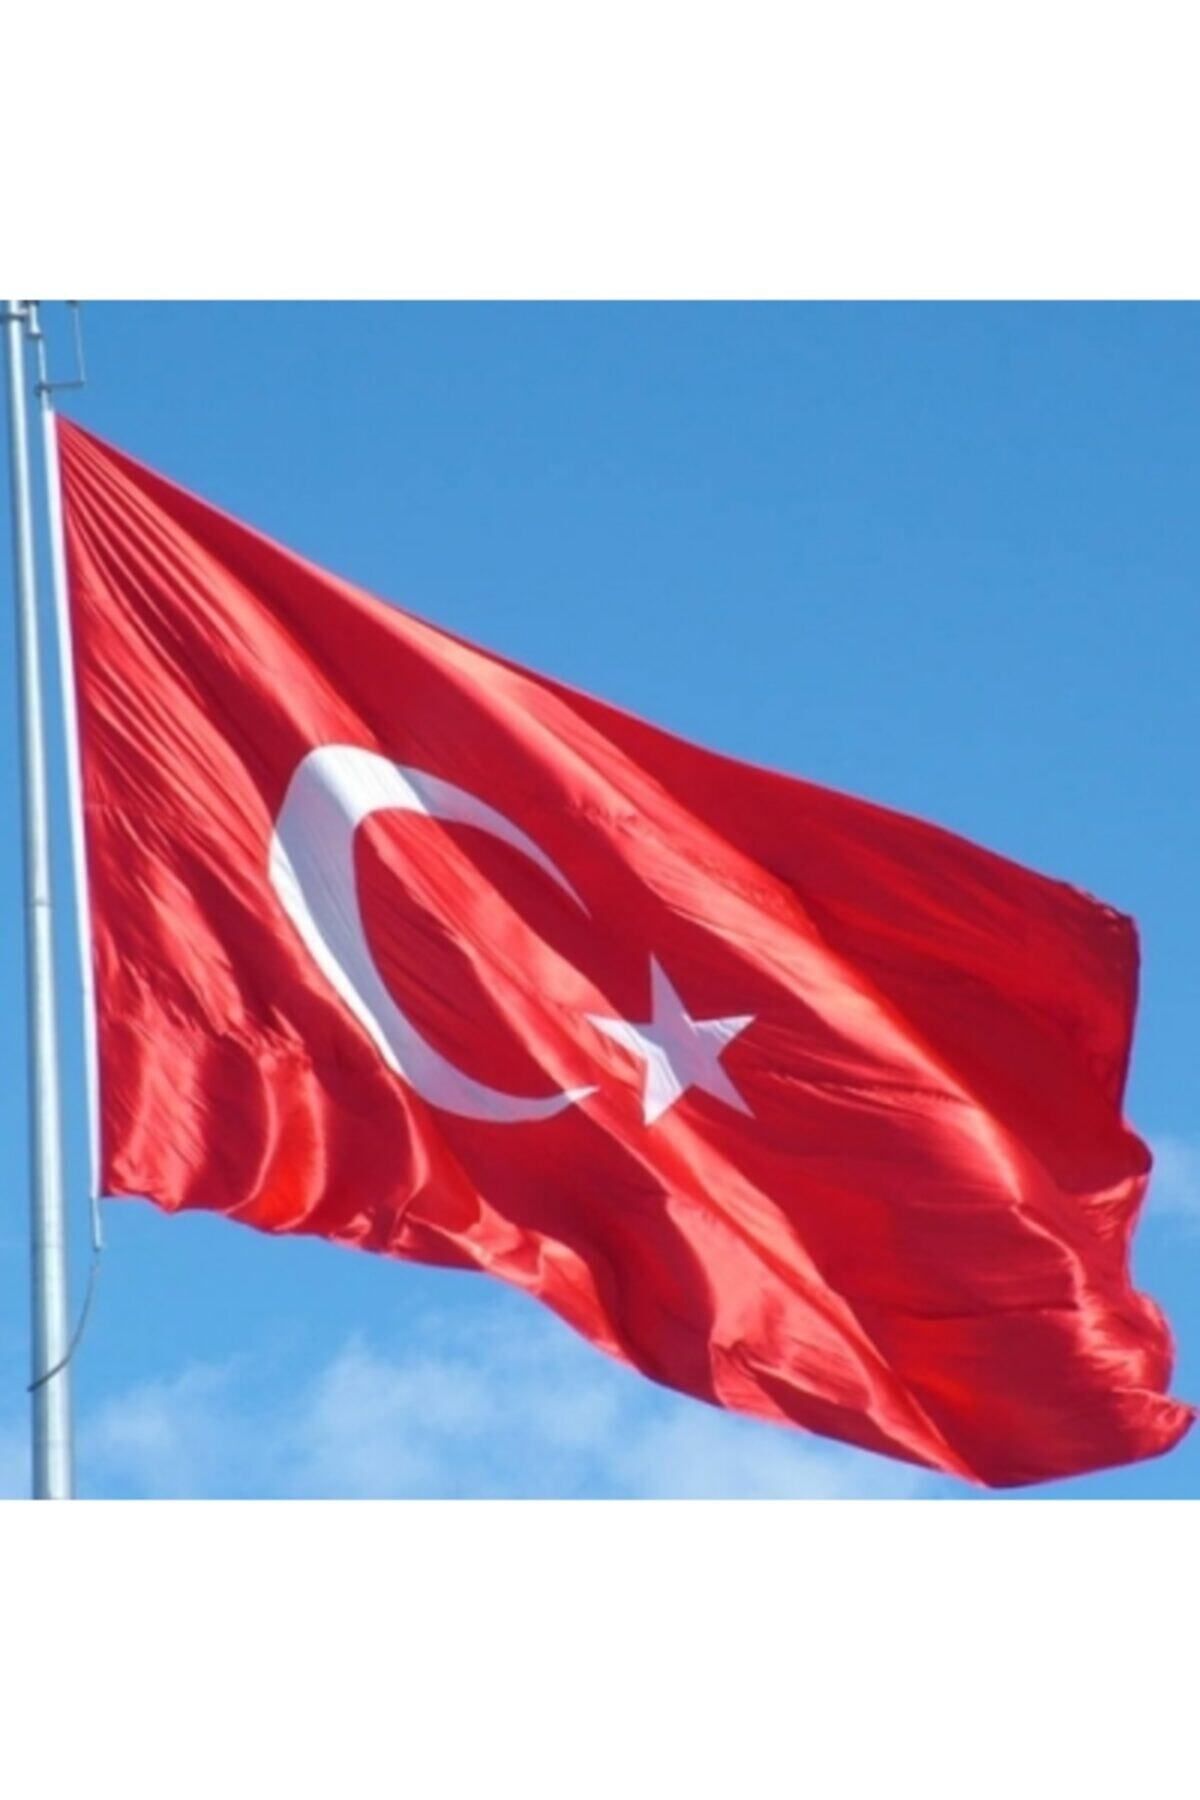 bayrakal  Paraşüt Kumaş Türk Bayrağı, Rüzgara Dayanıklı Bayrak, Direk Bayrağı, Büyük Bayrak 4x6m.